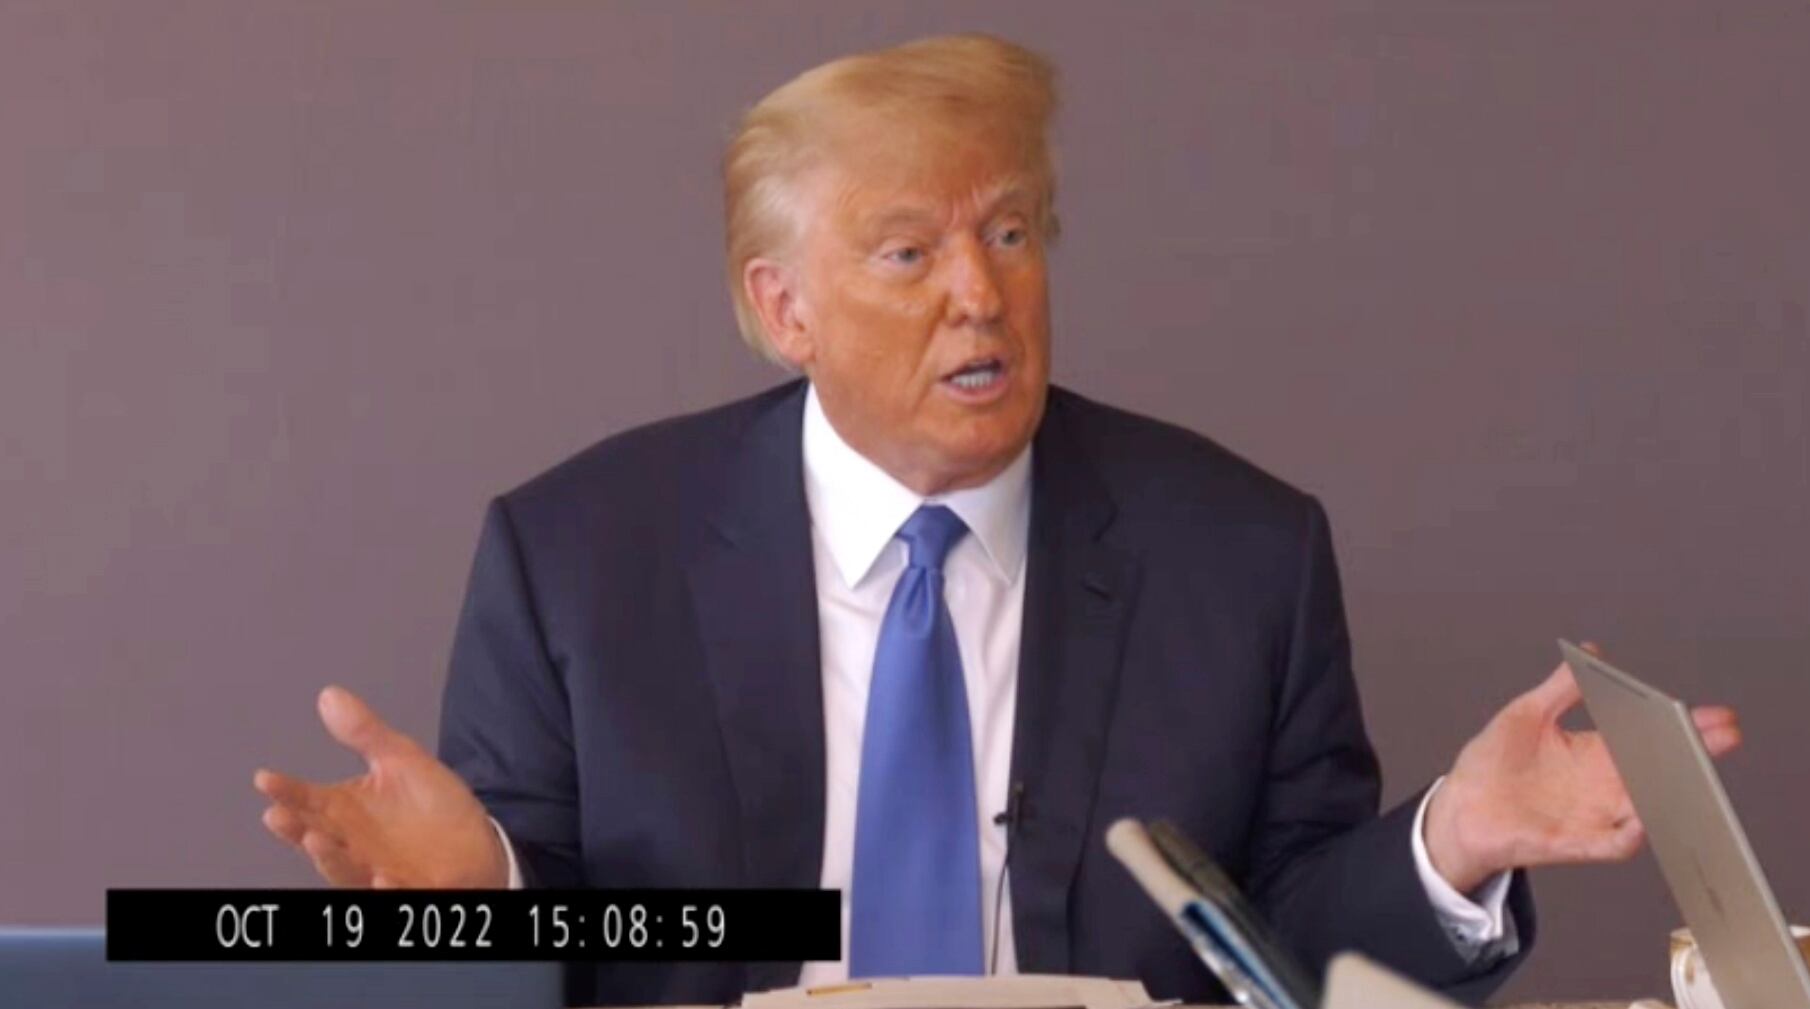 Imagen del video publicado por Kaplan Hecker & Fink del expresidente Donald Trump, donde responde preguntas durante su declaración, el 19 de octubre de 2022. 